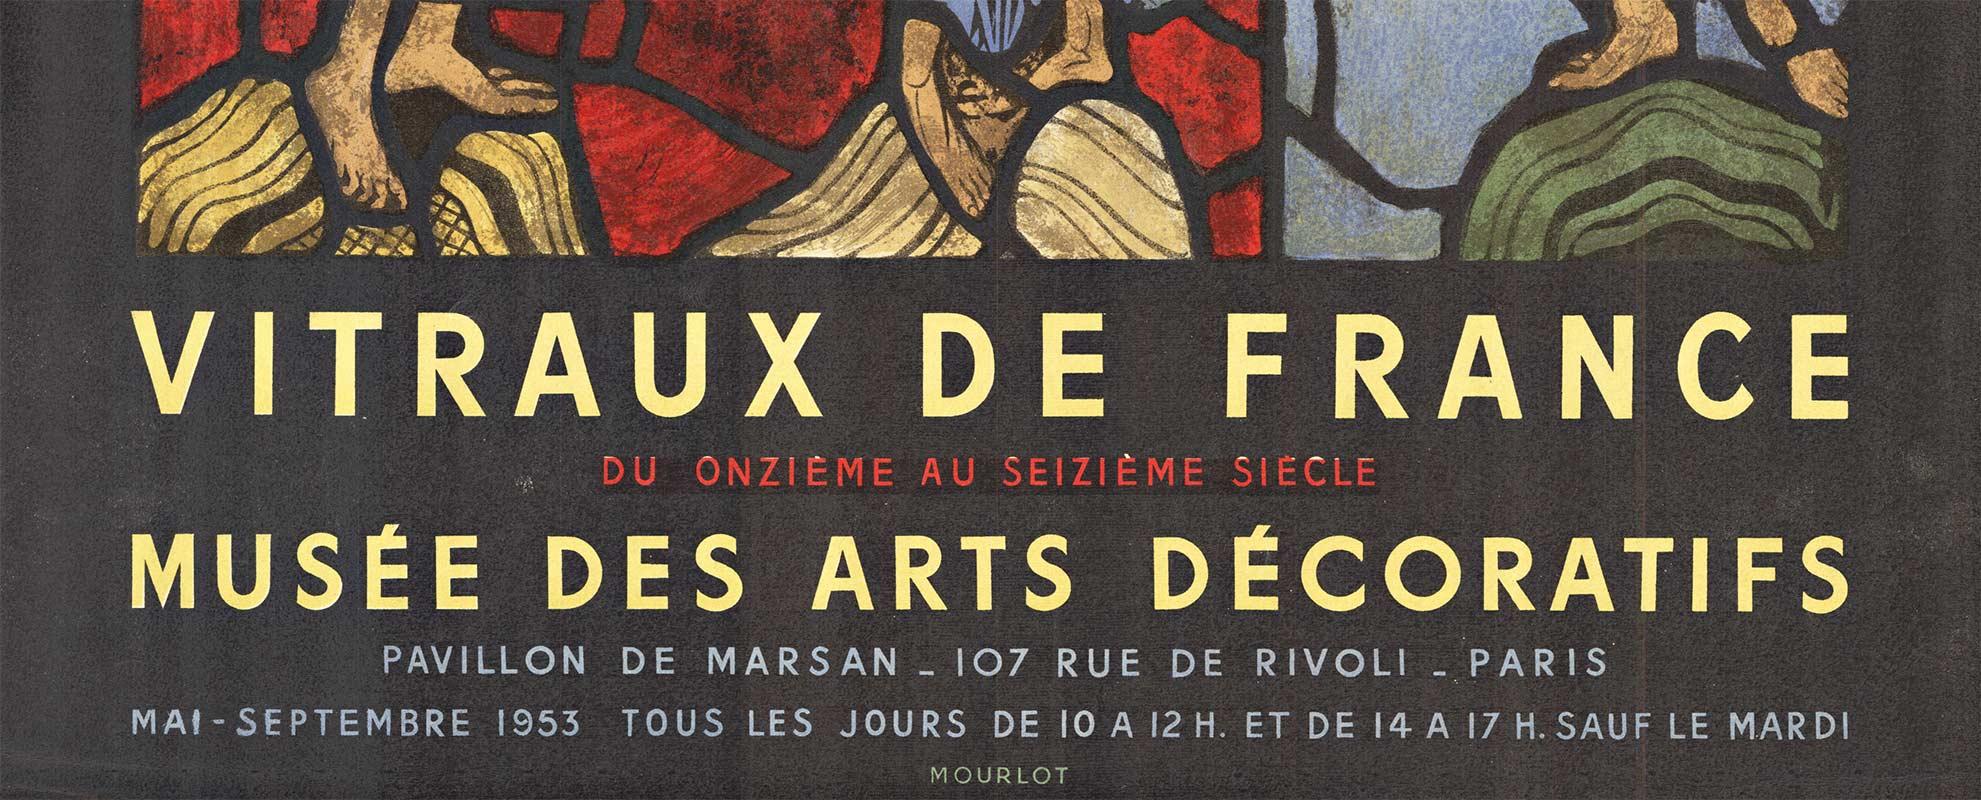 Vitraux De France, Musee des Arts Decoratifs, Original Moulot-Vintage-Poster (Art nouveau), Print, von Unknown